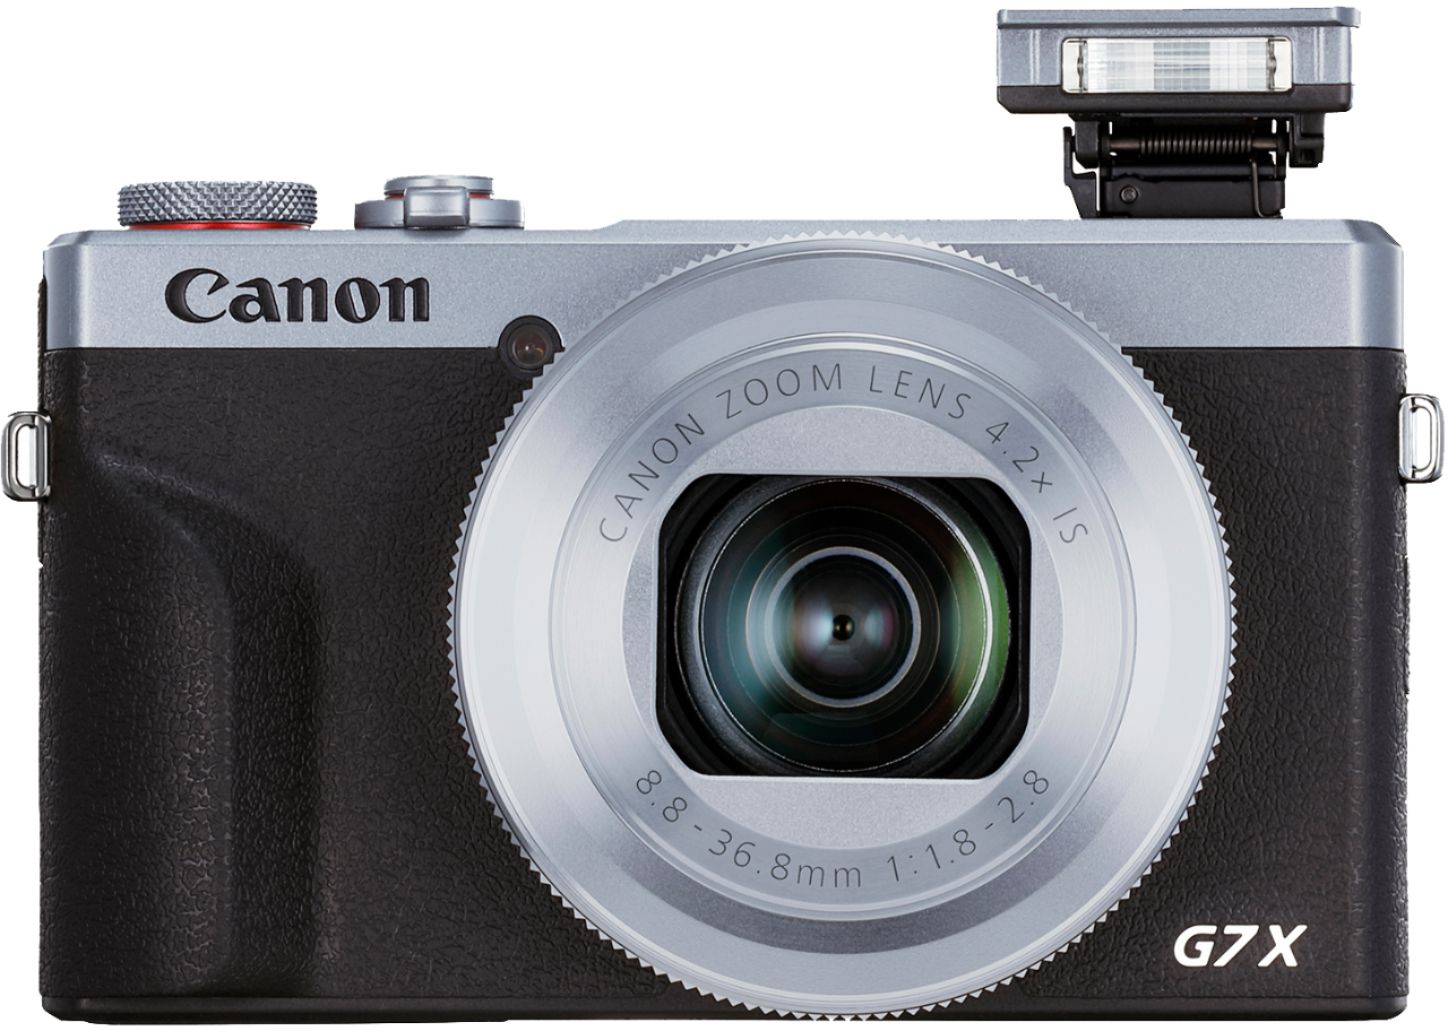 Best Buy: Canon PowerShot G7 X Mark III 20.1-Megapixel Digital